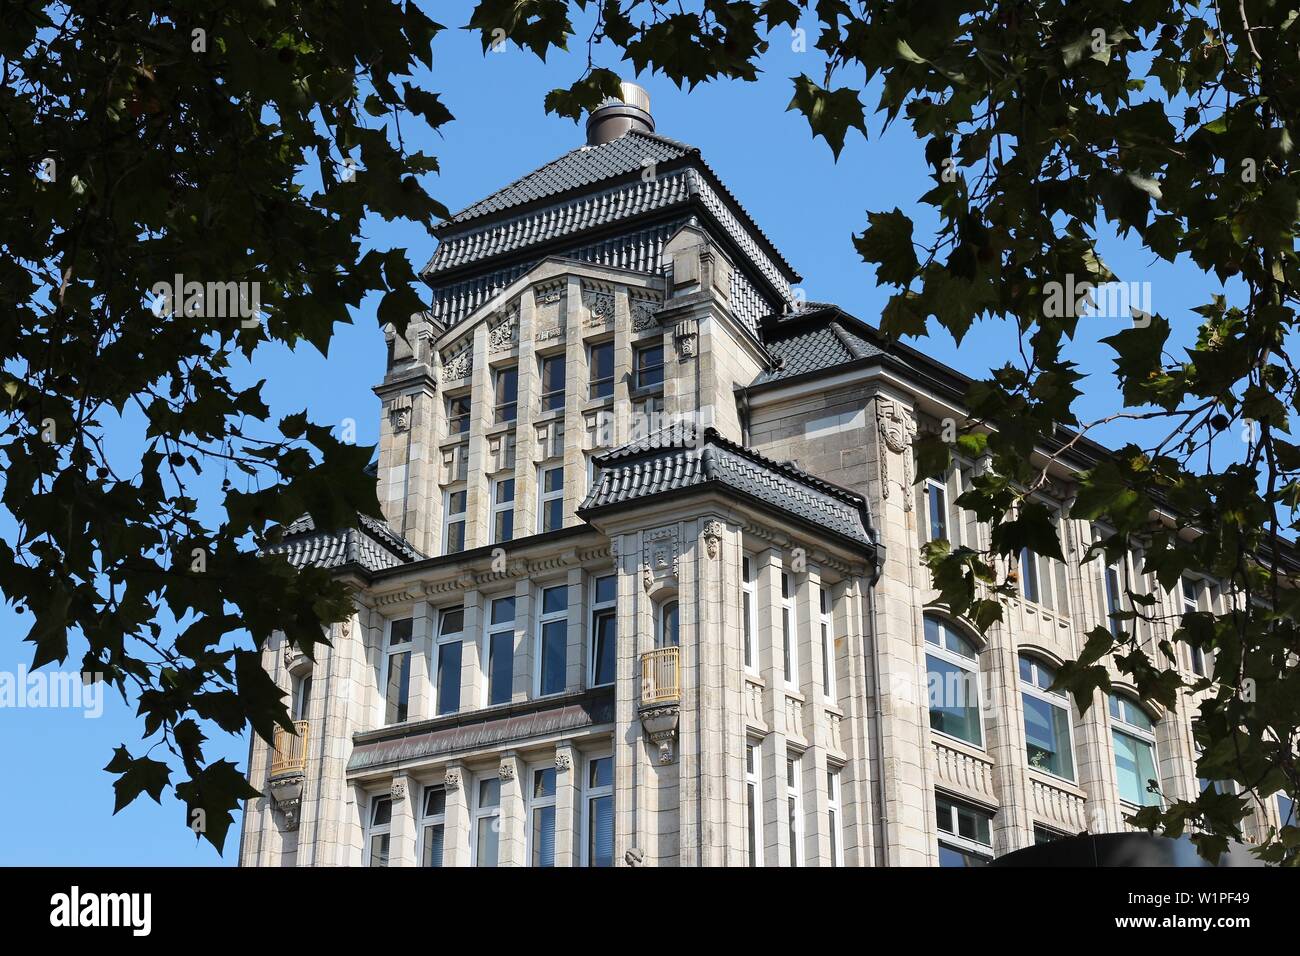 Der Stadt Hamburg in Deutschland. Sehenswürdigkeiten historische Gebäude - Seeburg. Spitalerstrasse Altstadt Straße. Stockfoto